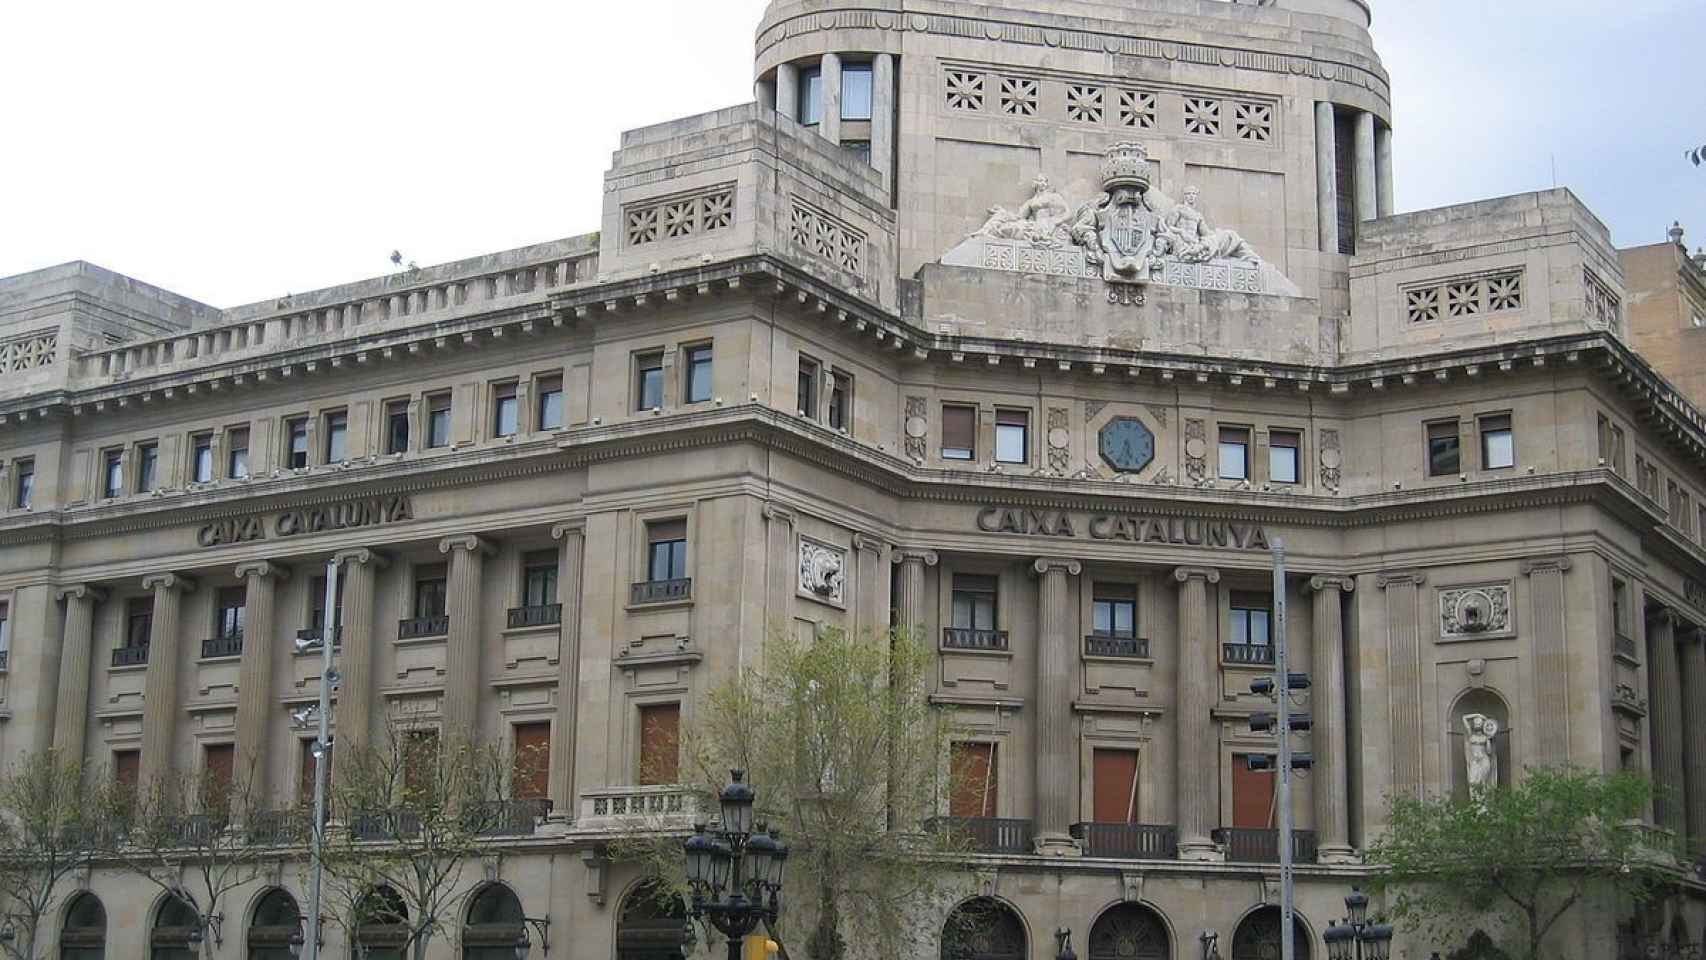 El rescate de Caixa Catalunya, cuya sede central aparece en la imagen, fue uno de los más caros del sistema y superó los 12.000 millones